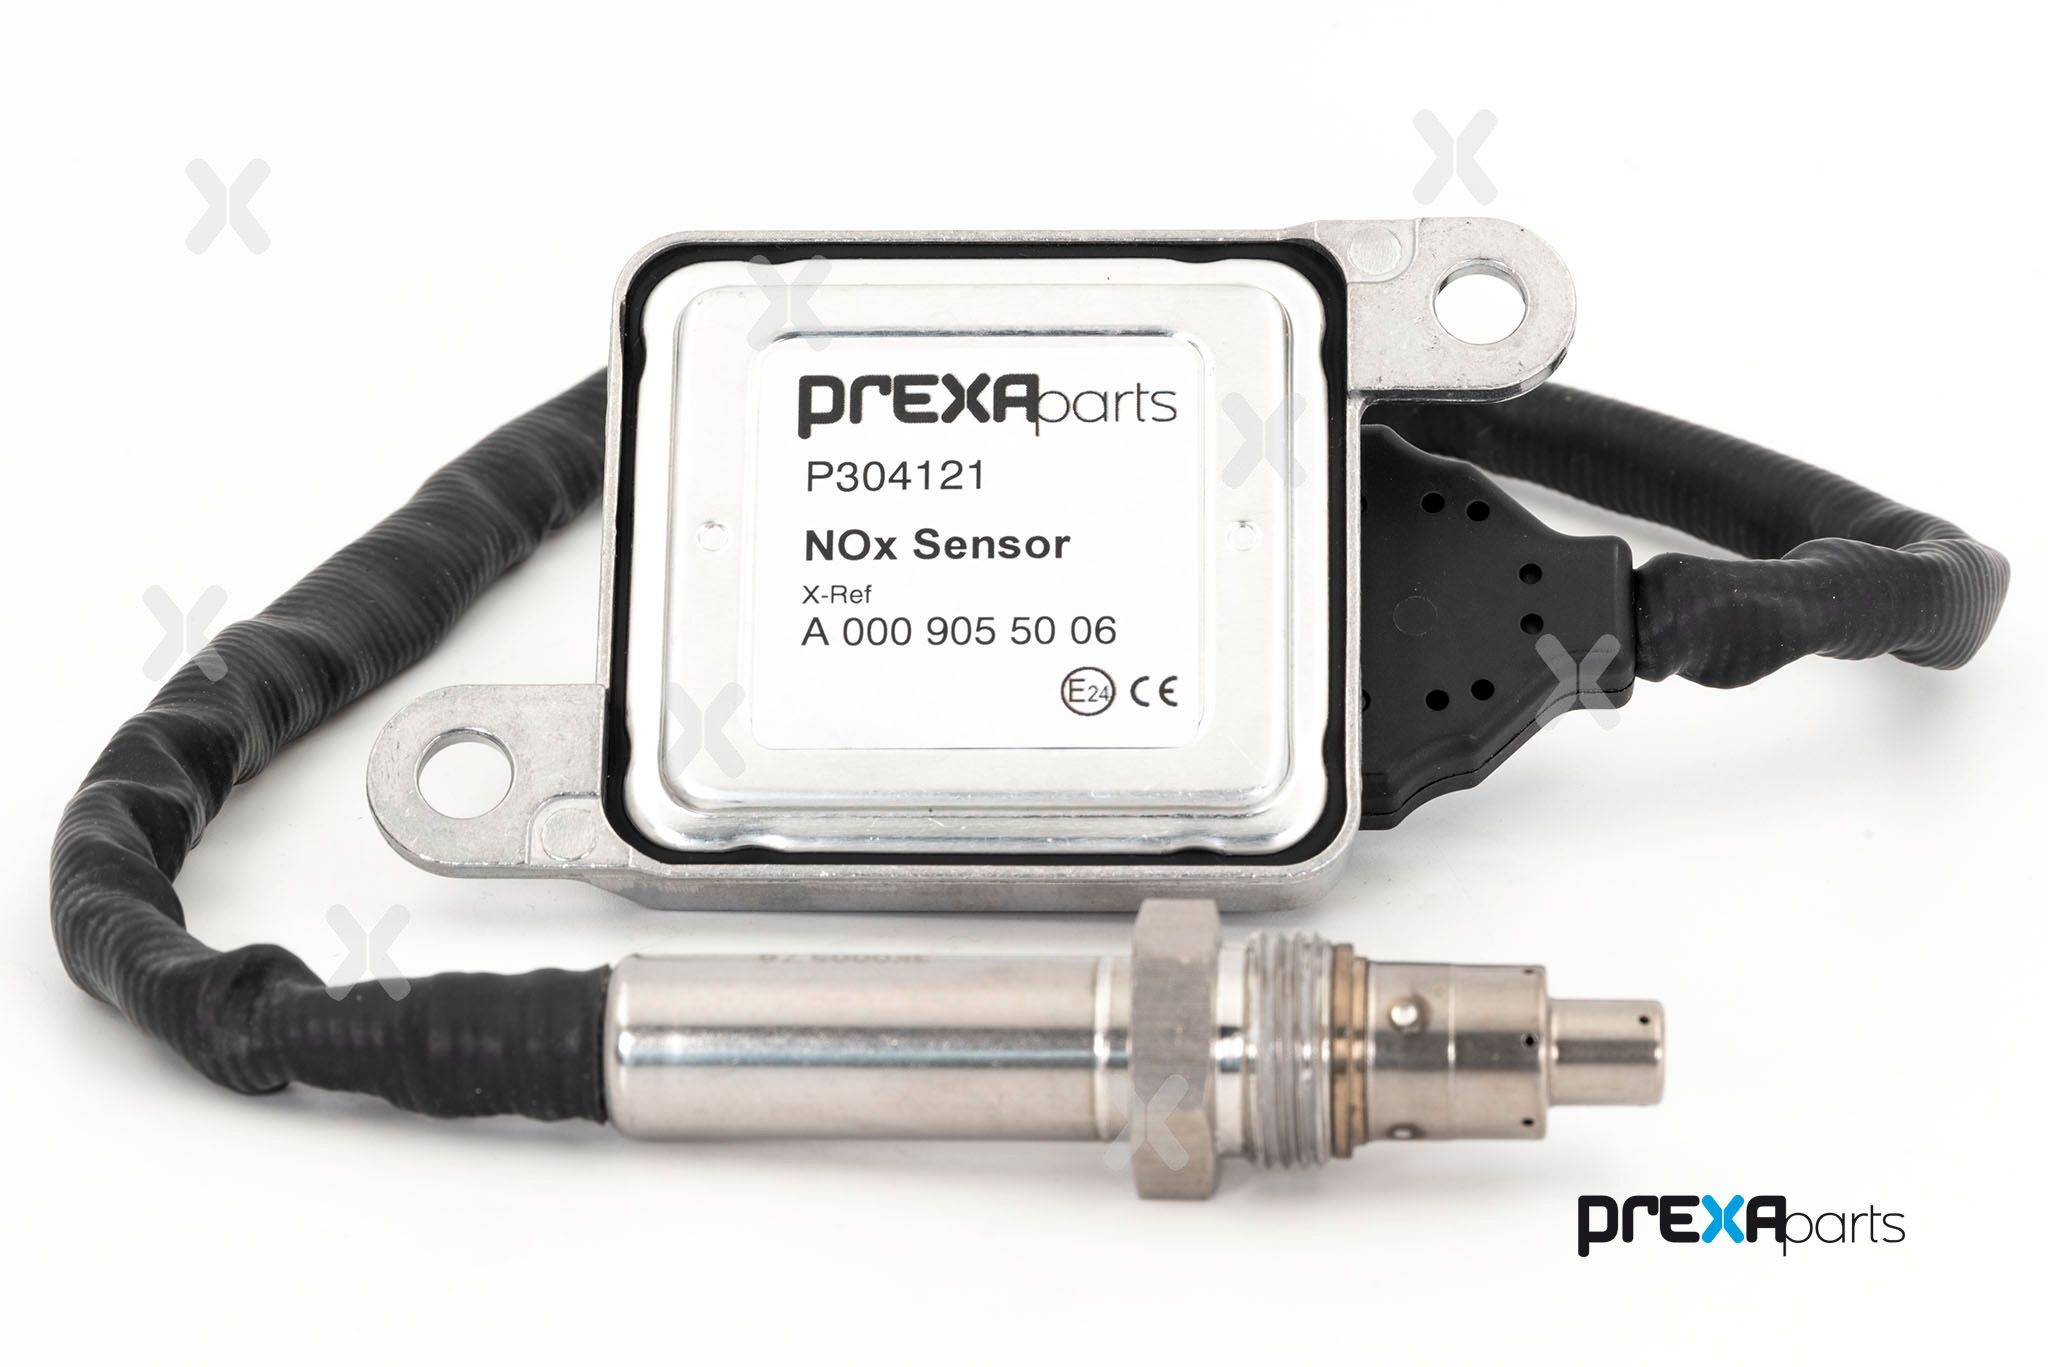 PREXAparts P304121 NOx Sensor, NOx Catalyst A 000 905 5006